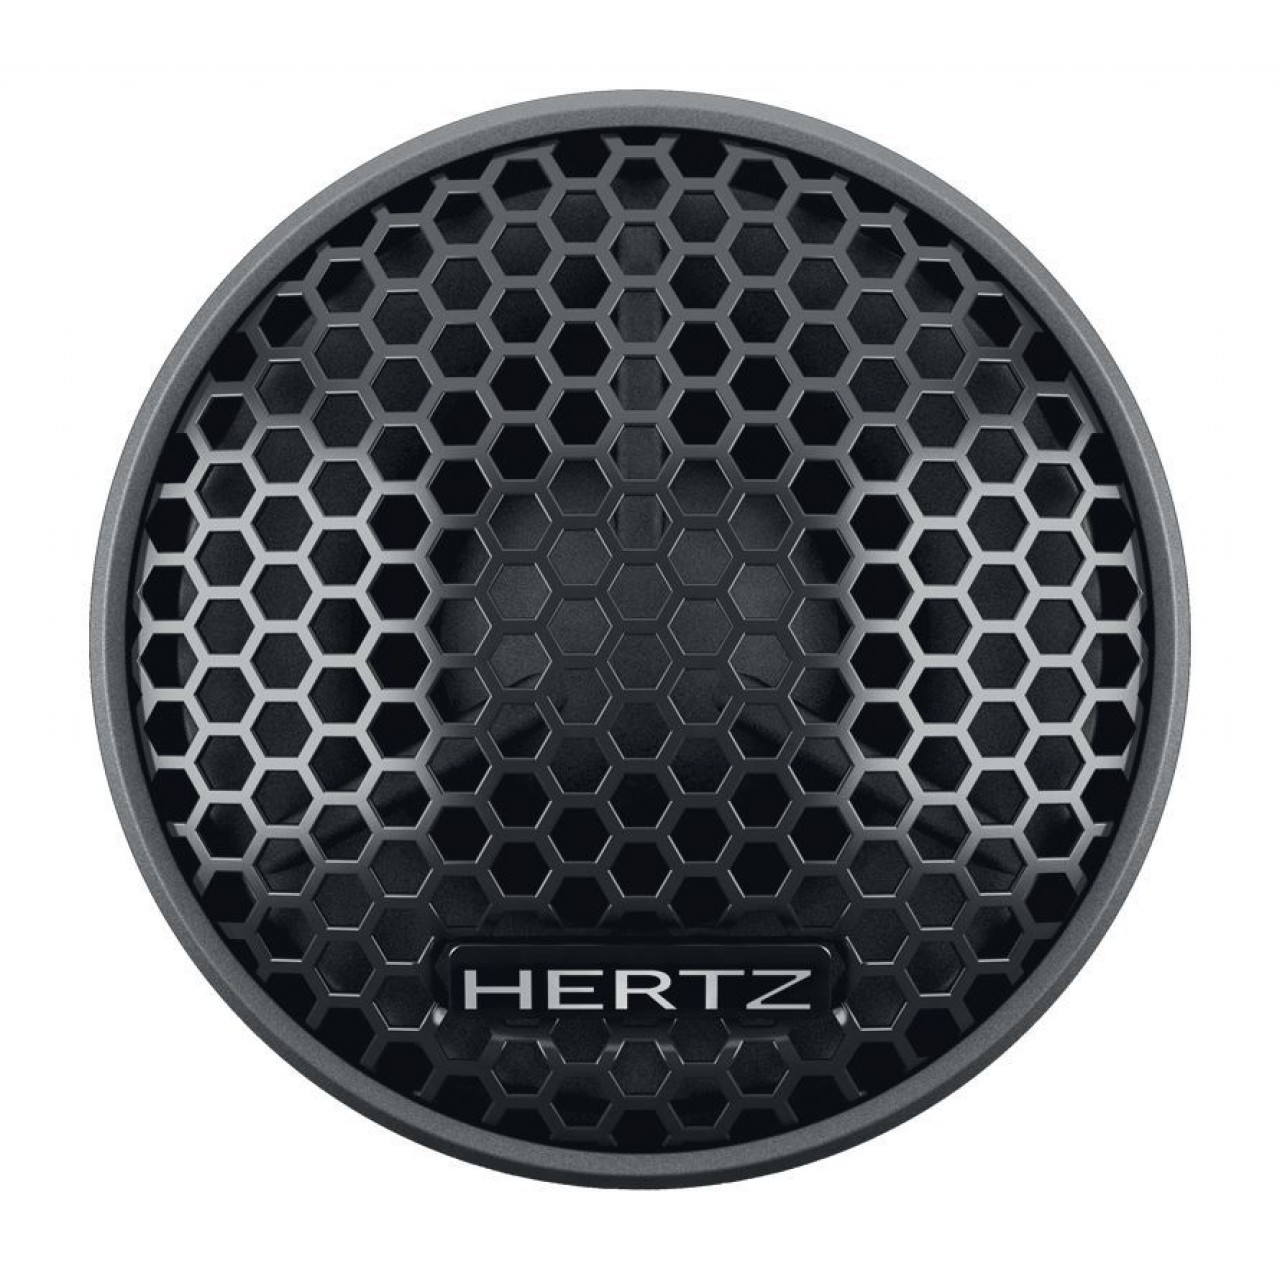 Ηχεία Αυτοκινήτου – Hertz Dieci DT 24.3